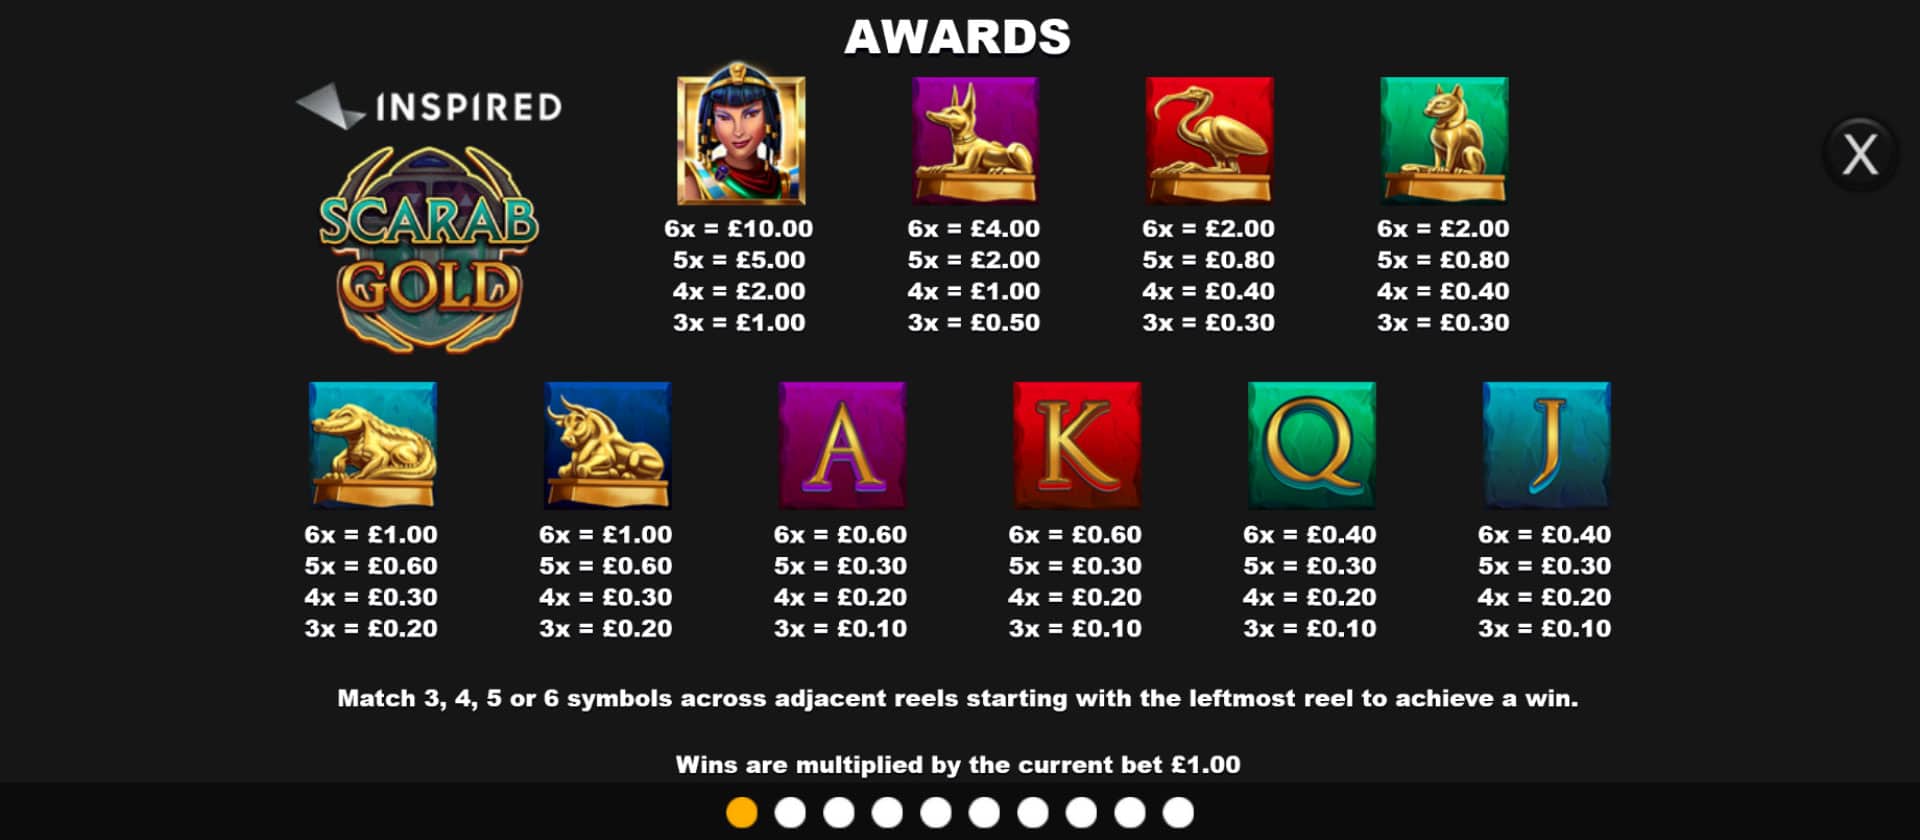 tabella dei premi della slot online scarab gold